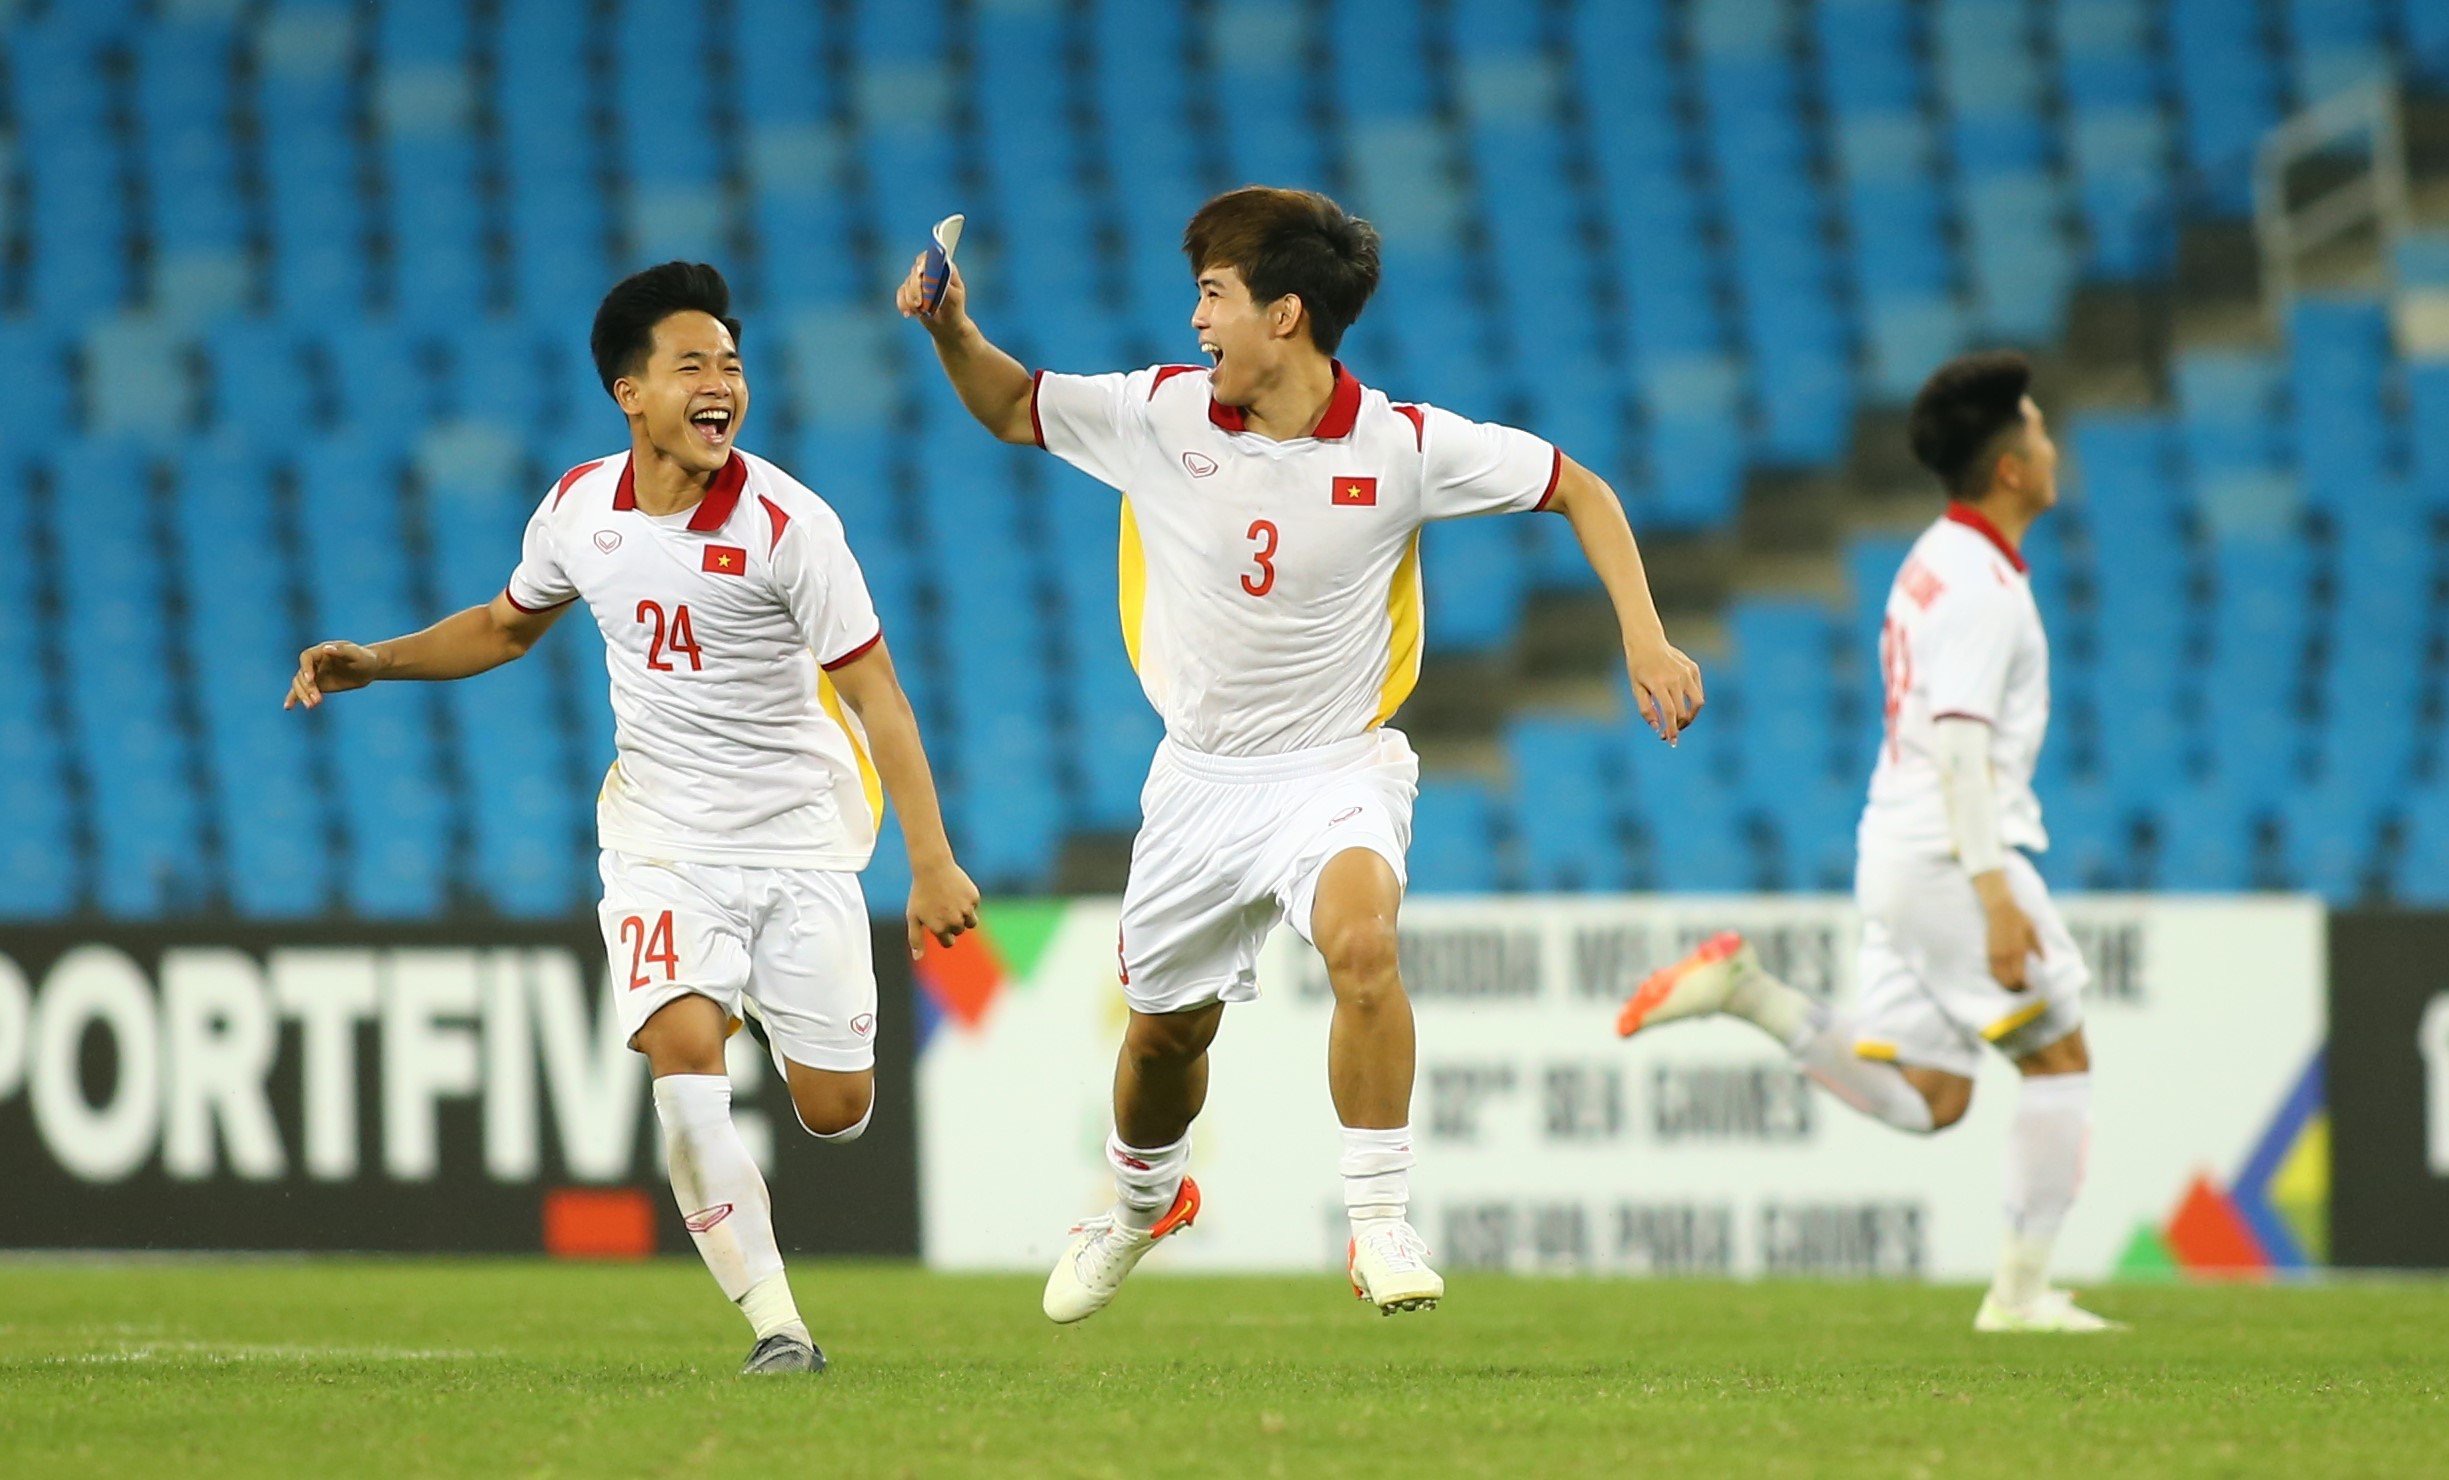 Chức vô địch U.23 Đông Nam Á là một danh hiệu quan trọng của bóng đá trong khu vực và đội tuyển U23 Việt Nam đã giành chiến thắng ấn tượng tại giải đấu vào năm